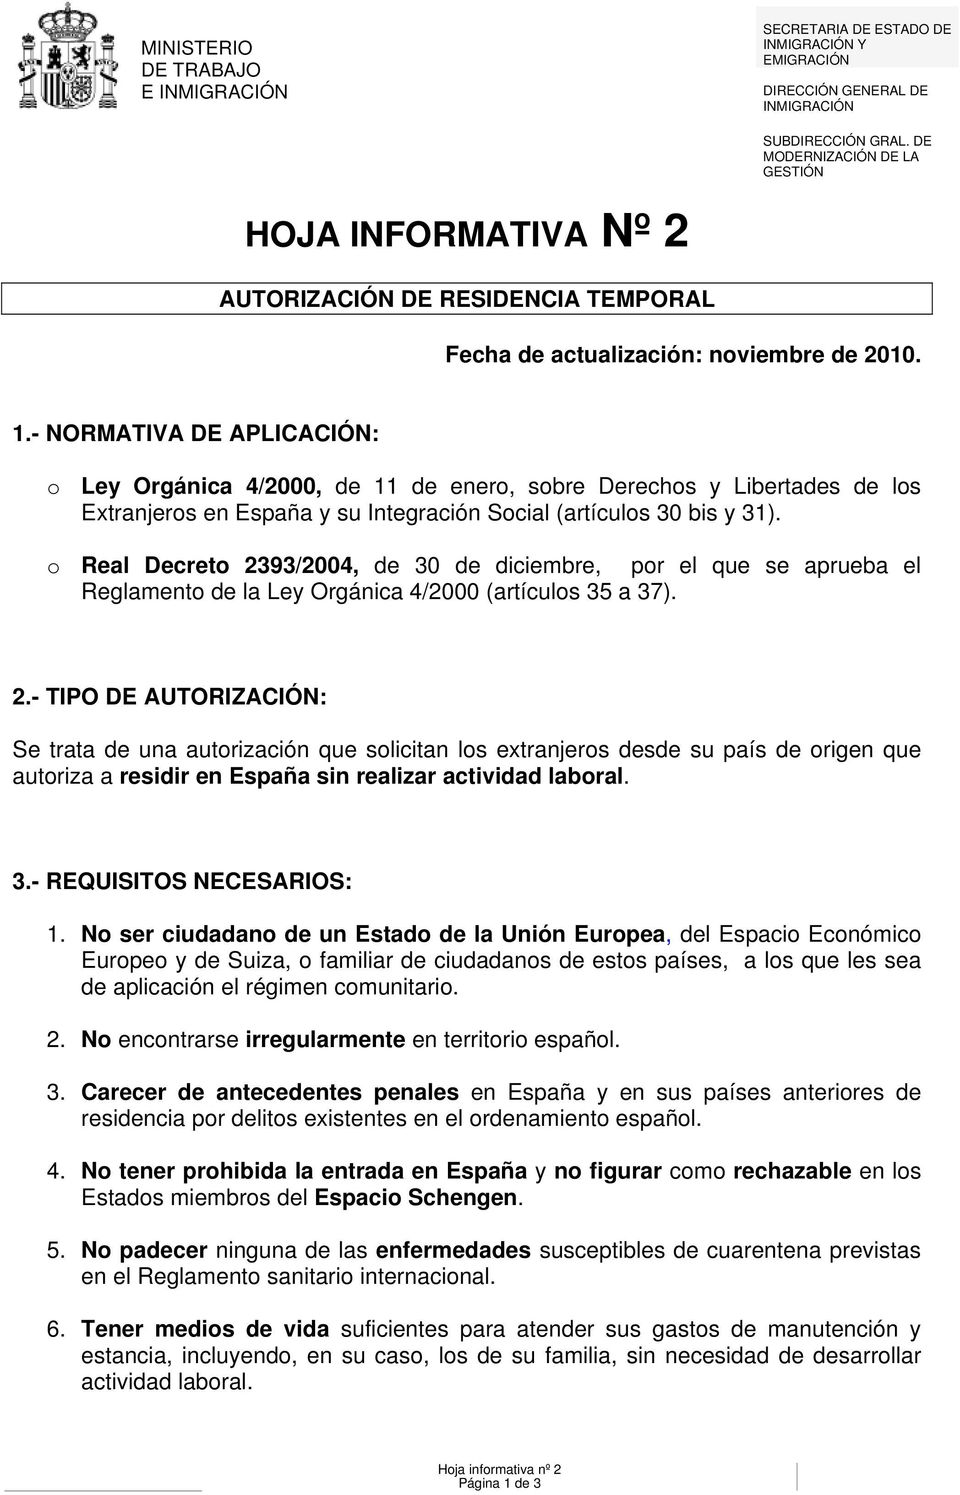 - NORMATIVA DE APLICACIÓN: o Ley Orgánica 4/2000, de 11 de enero, sobre Derechos y Libertades de los Extranjeros en España y su Integración Social (artículos 30 bis y 31).